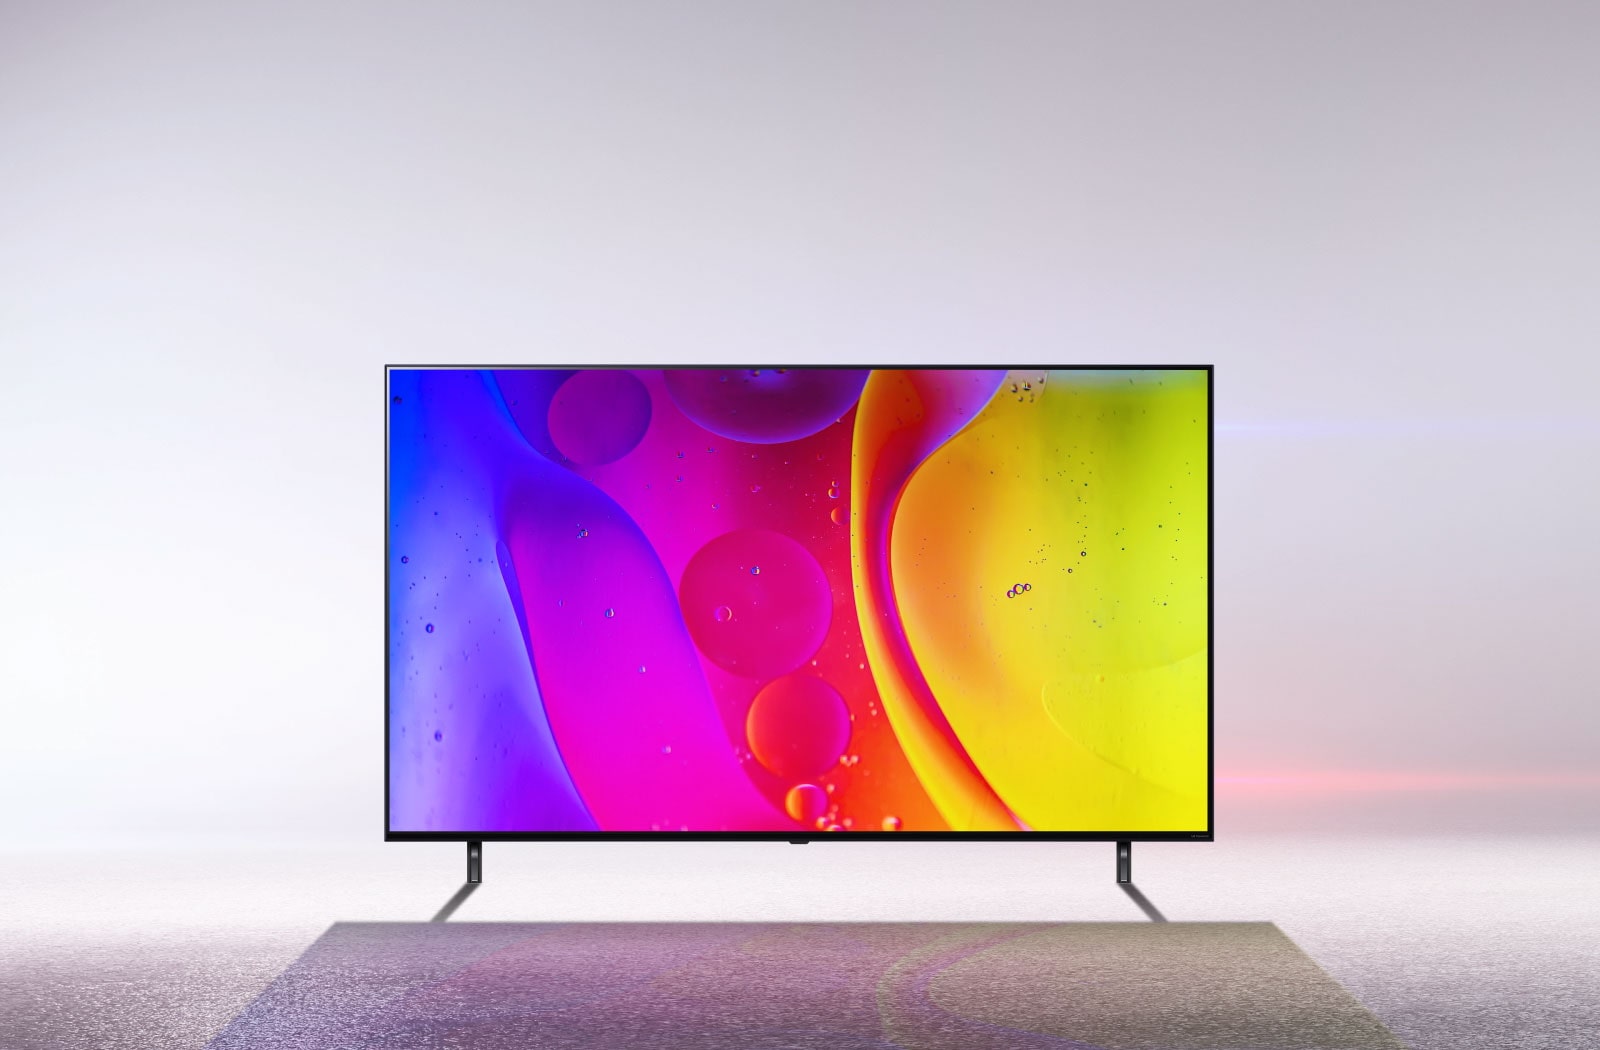  Soporte de pared para televisor LG de 75 pulgadas clase  NanoCell serie 80 LED 4K UHD Smart webOS TV (75NANO80UPA) - Perfil bajo de  1.7 pulgadas desde la pared, ángulo de